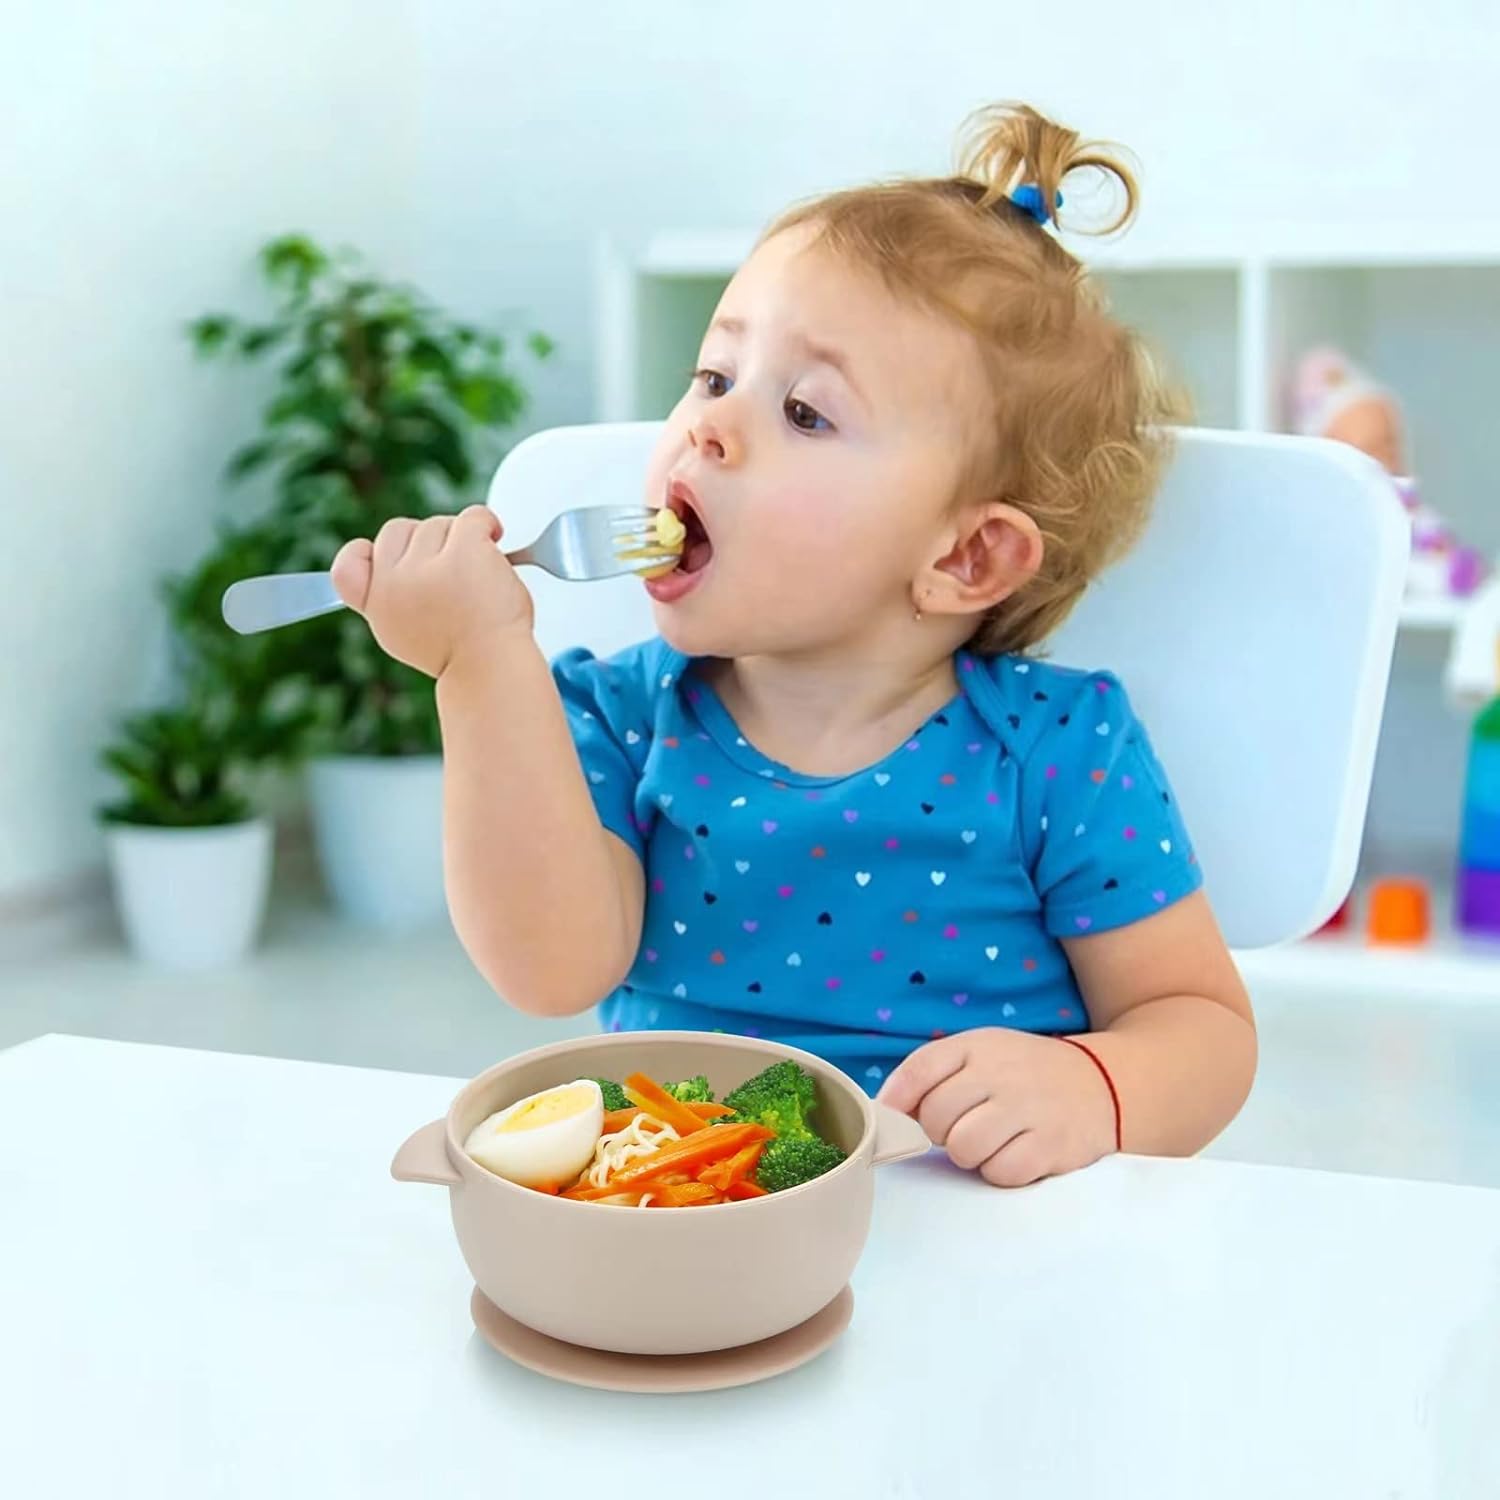 باندا اير مجموعة اوعية طعام للاطفال مع شفط من 3 قطع | وعاء طعام من السيليكون للاطفال الصغار والرضع | سيليكون ناعم امن غذائيا وخالي من BPA، ألوان متعددة